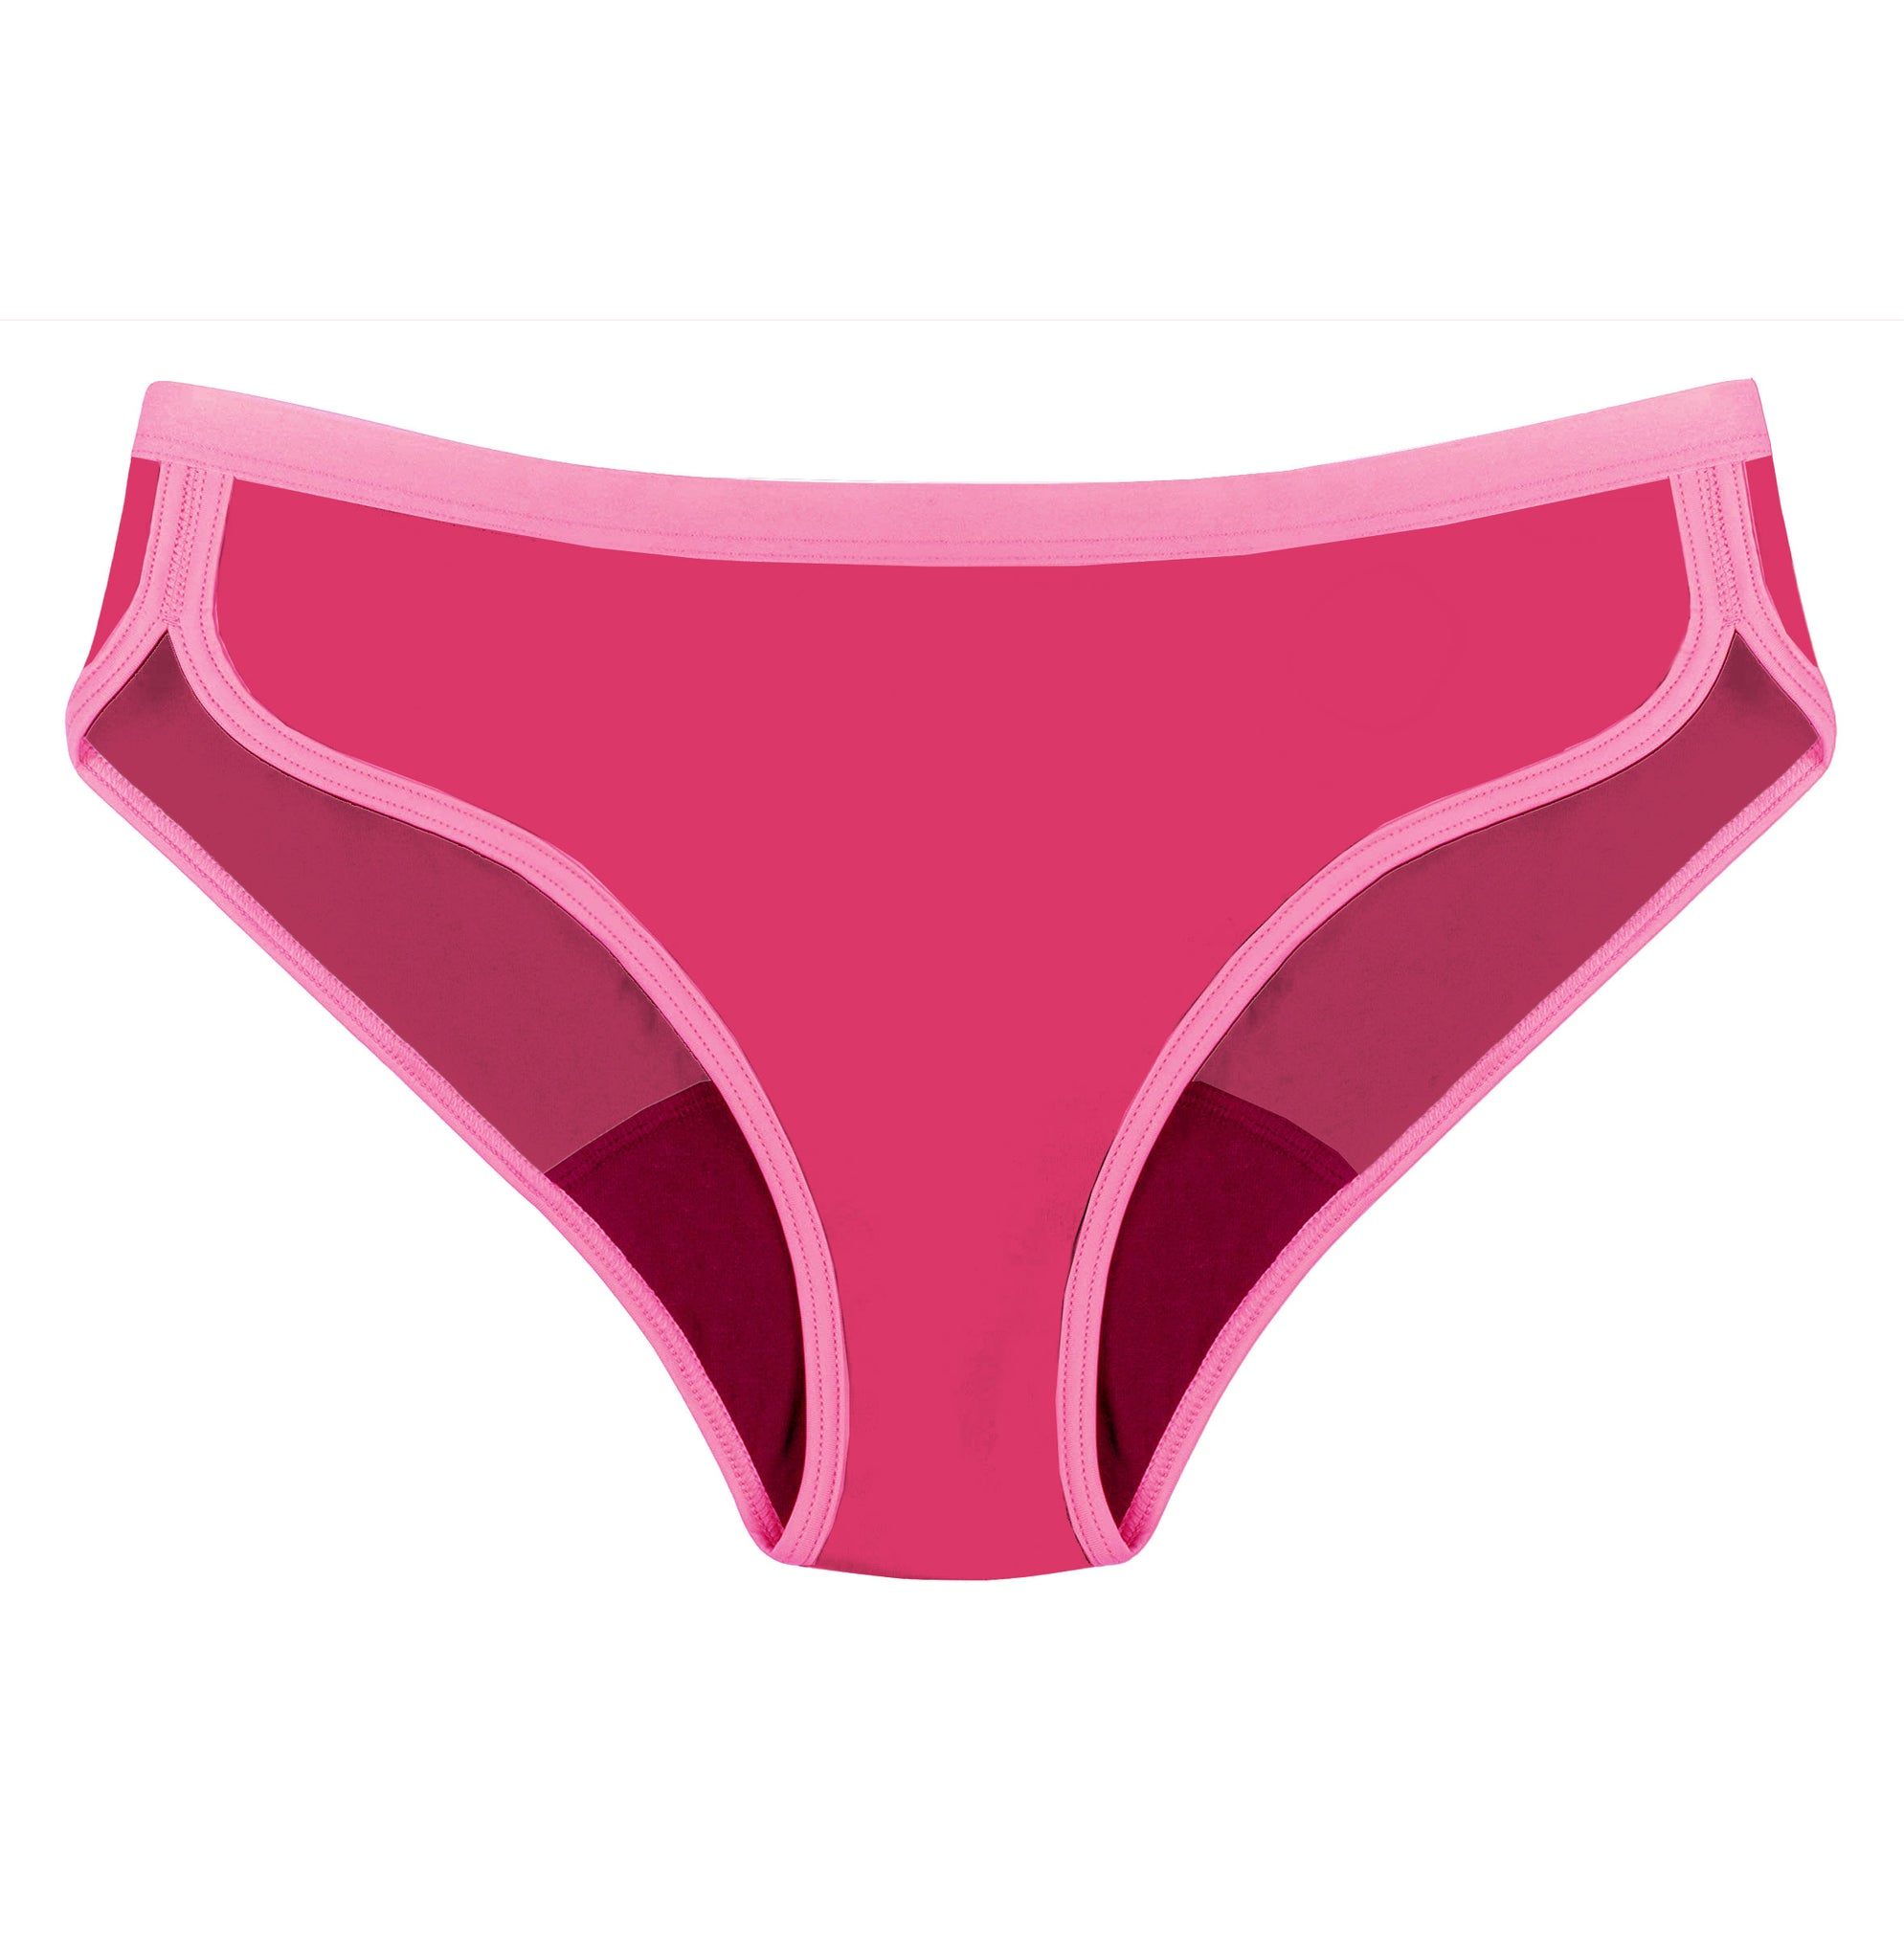 Aluna calzón menstrual tiro bajo Sport Fucsia con detalles rosados, frente, flujo alto, en oferta, absorbente, hipoalergénico, antibacteriano, absorbente